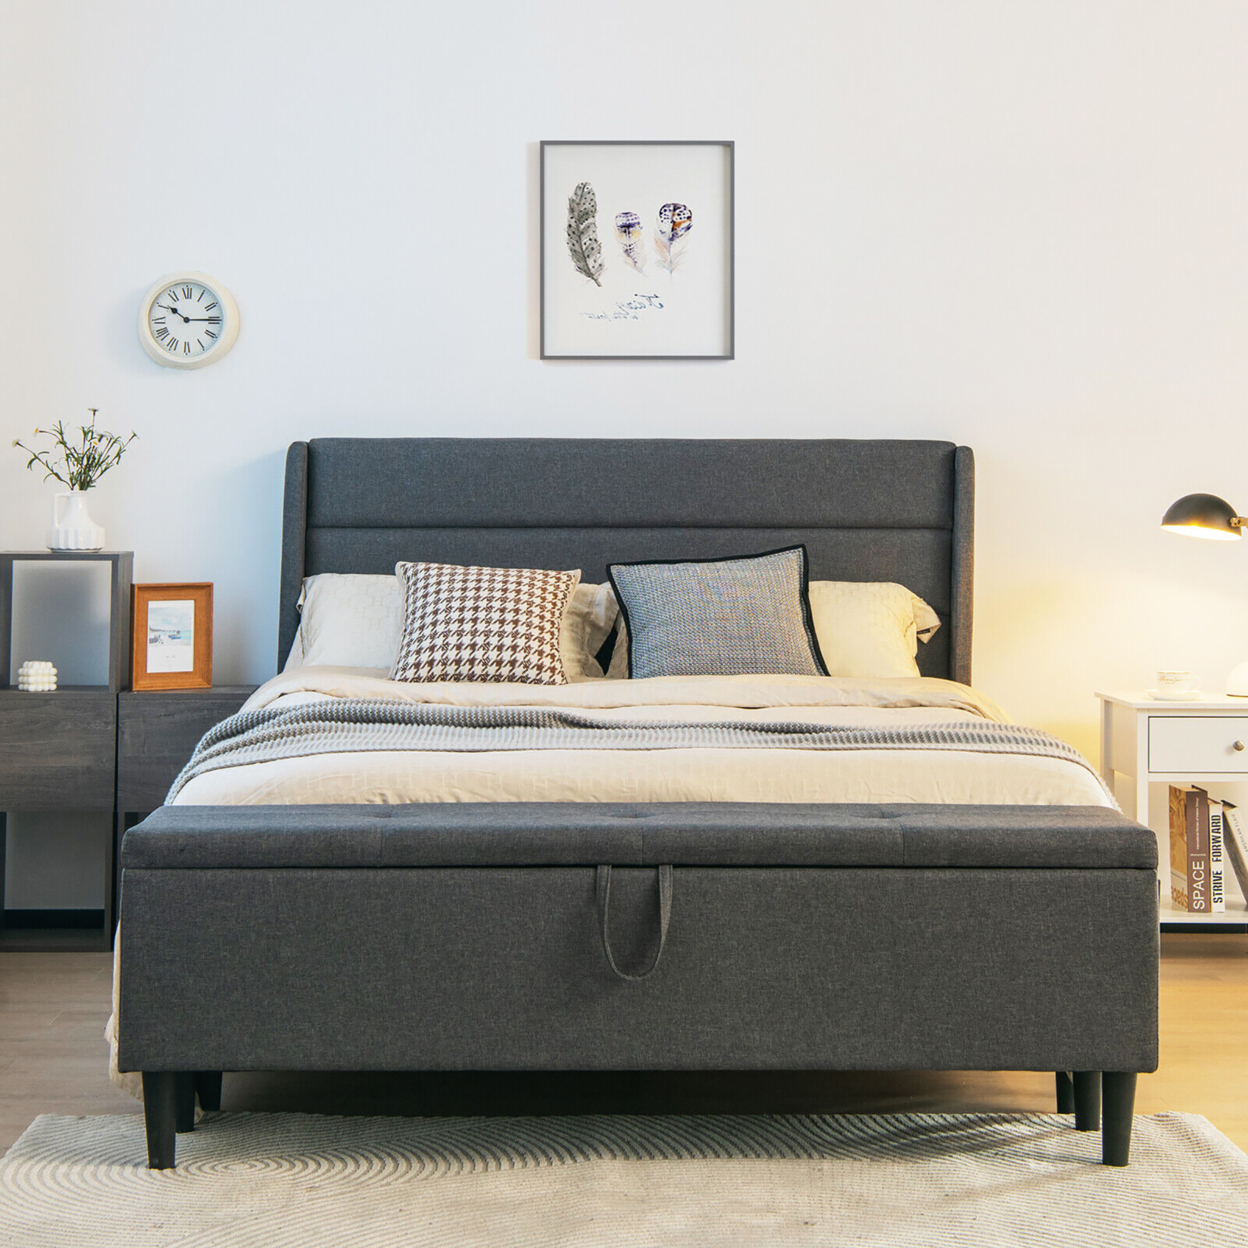 Full Upholstered Platform Bed Frame W/ Storage Ottoman Slats Support Grey